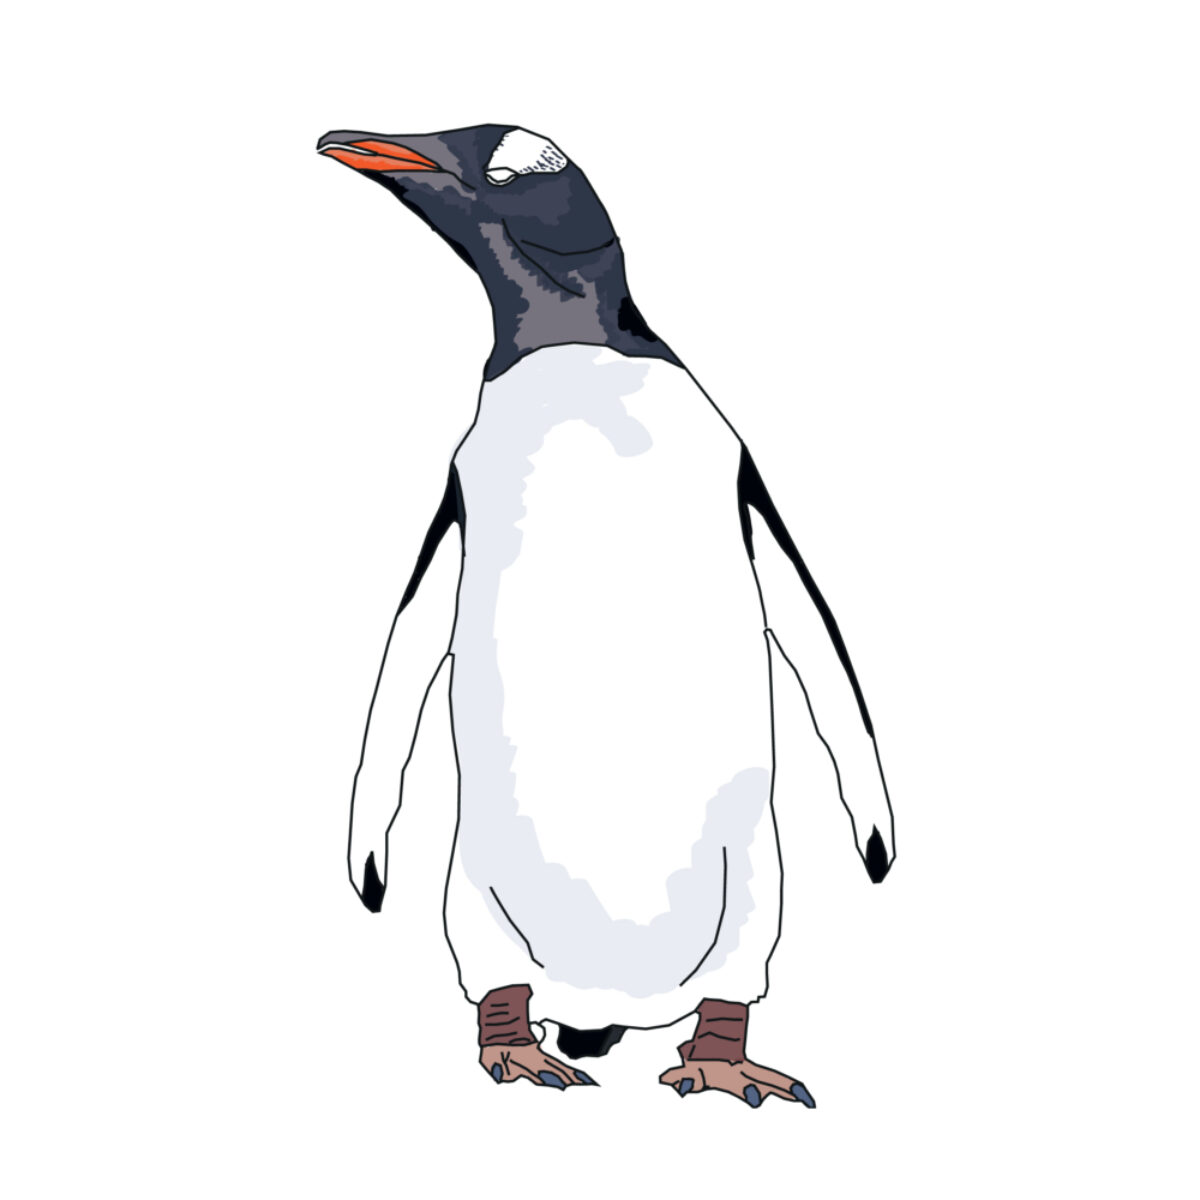 Gentoo_penguin